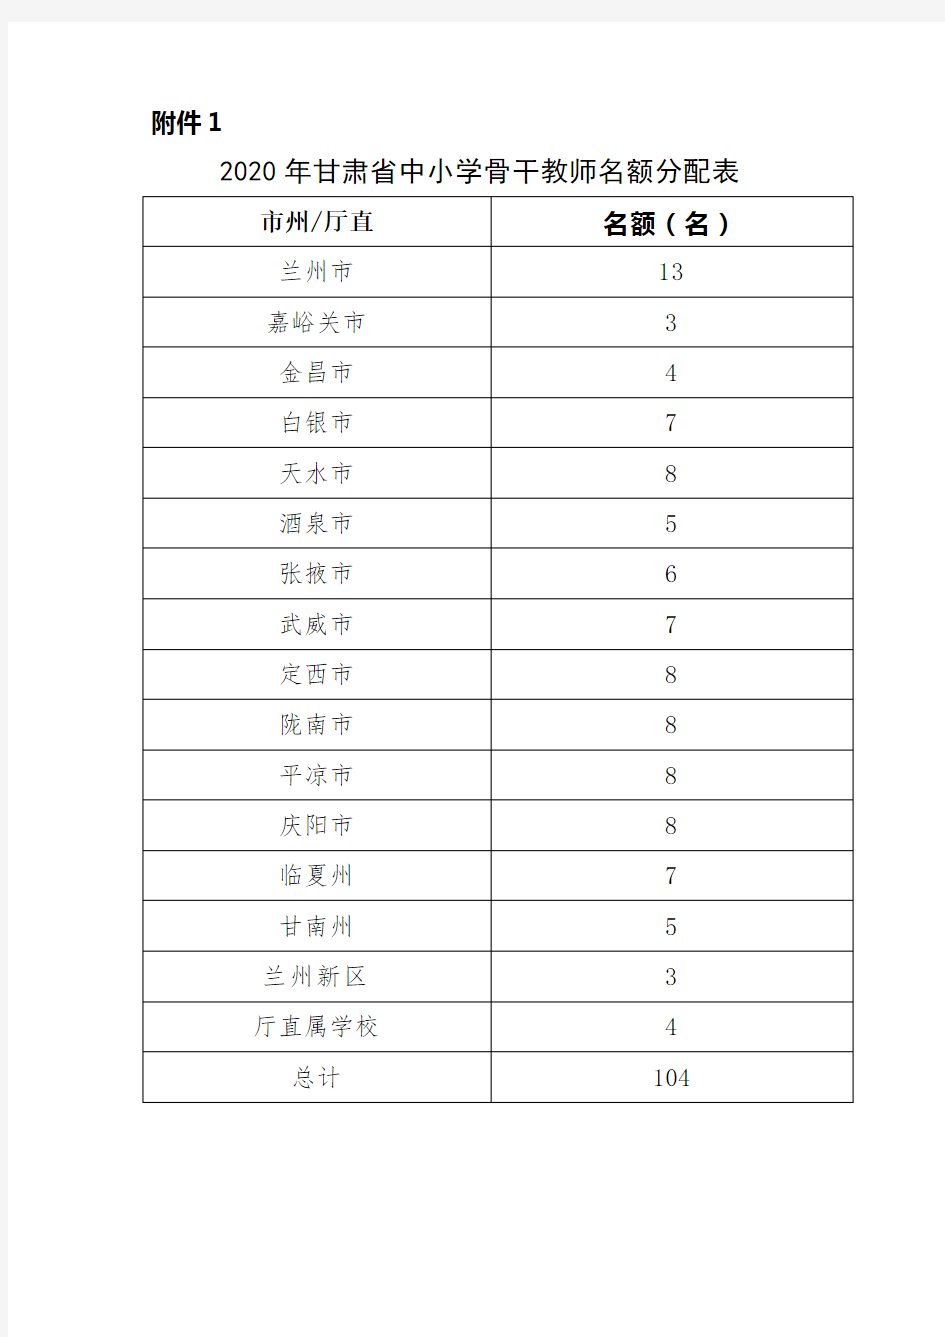 2020年甘肃省中小学骨干教师名额分配表